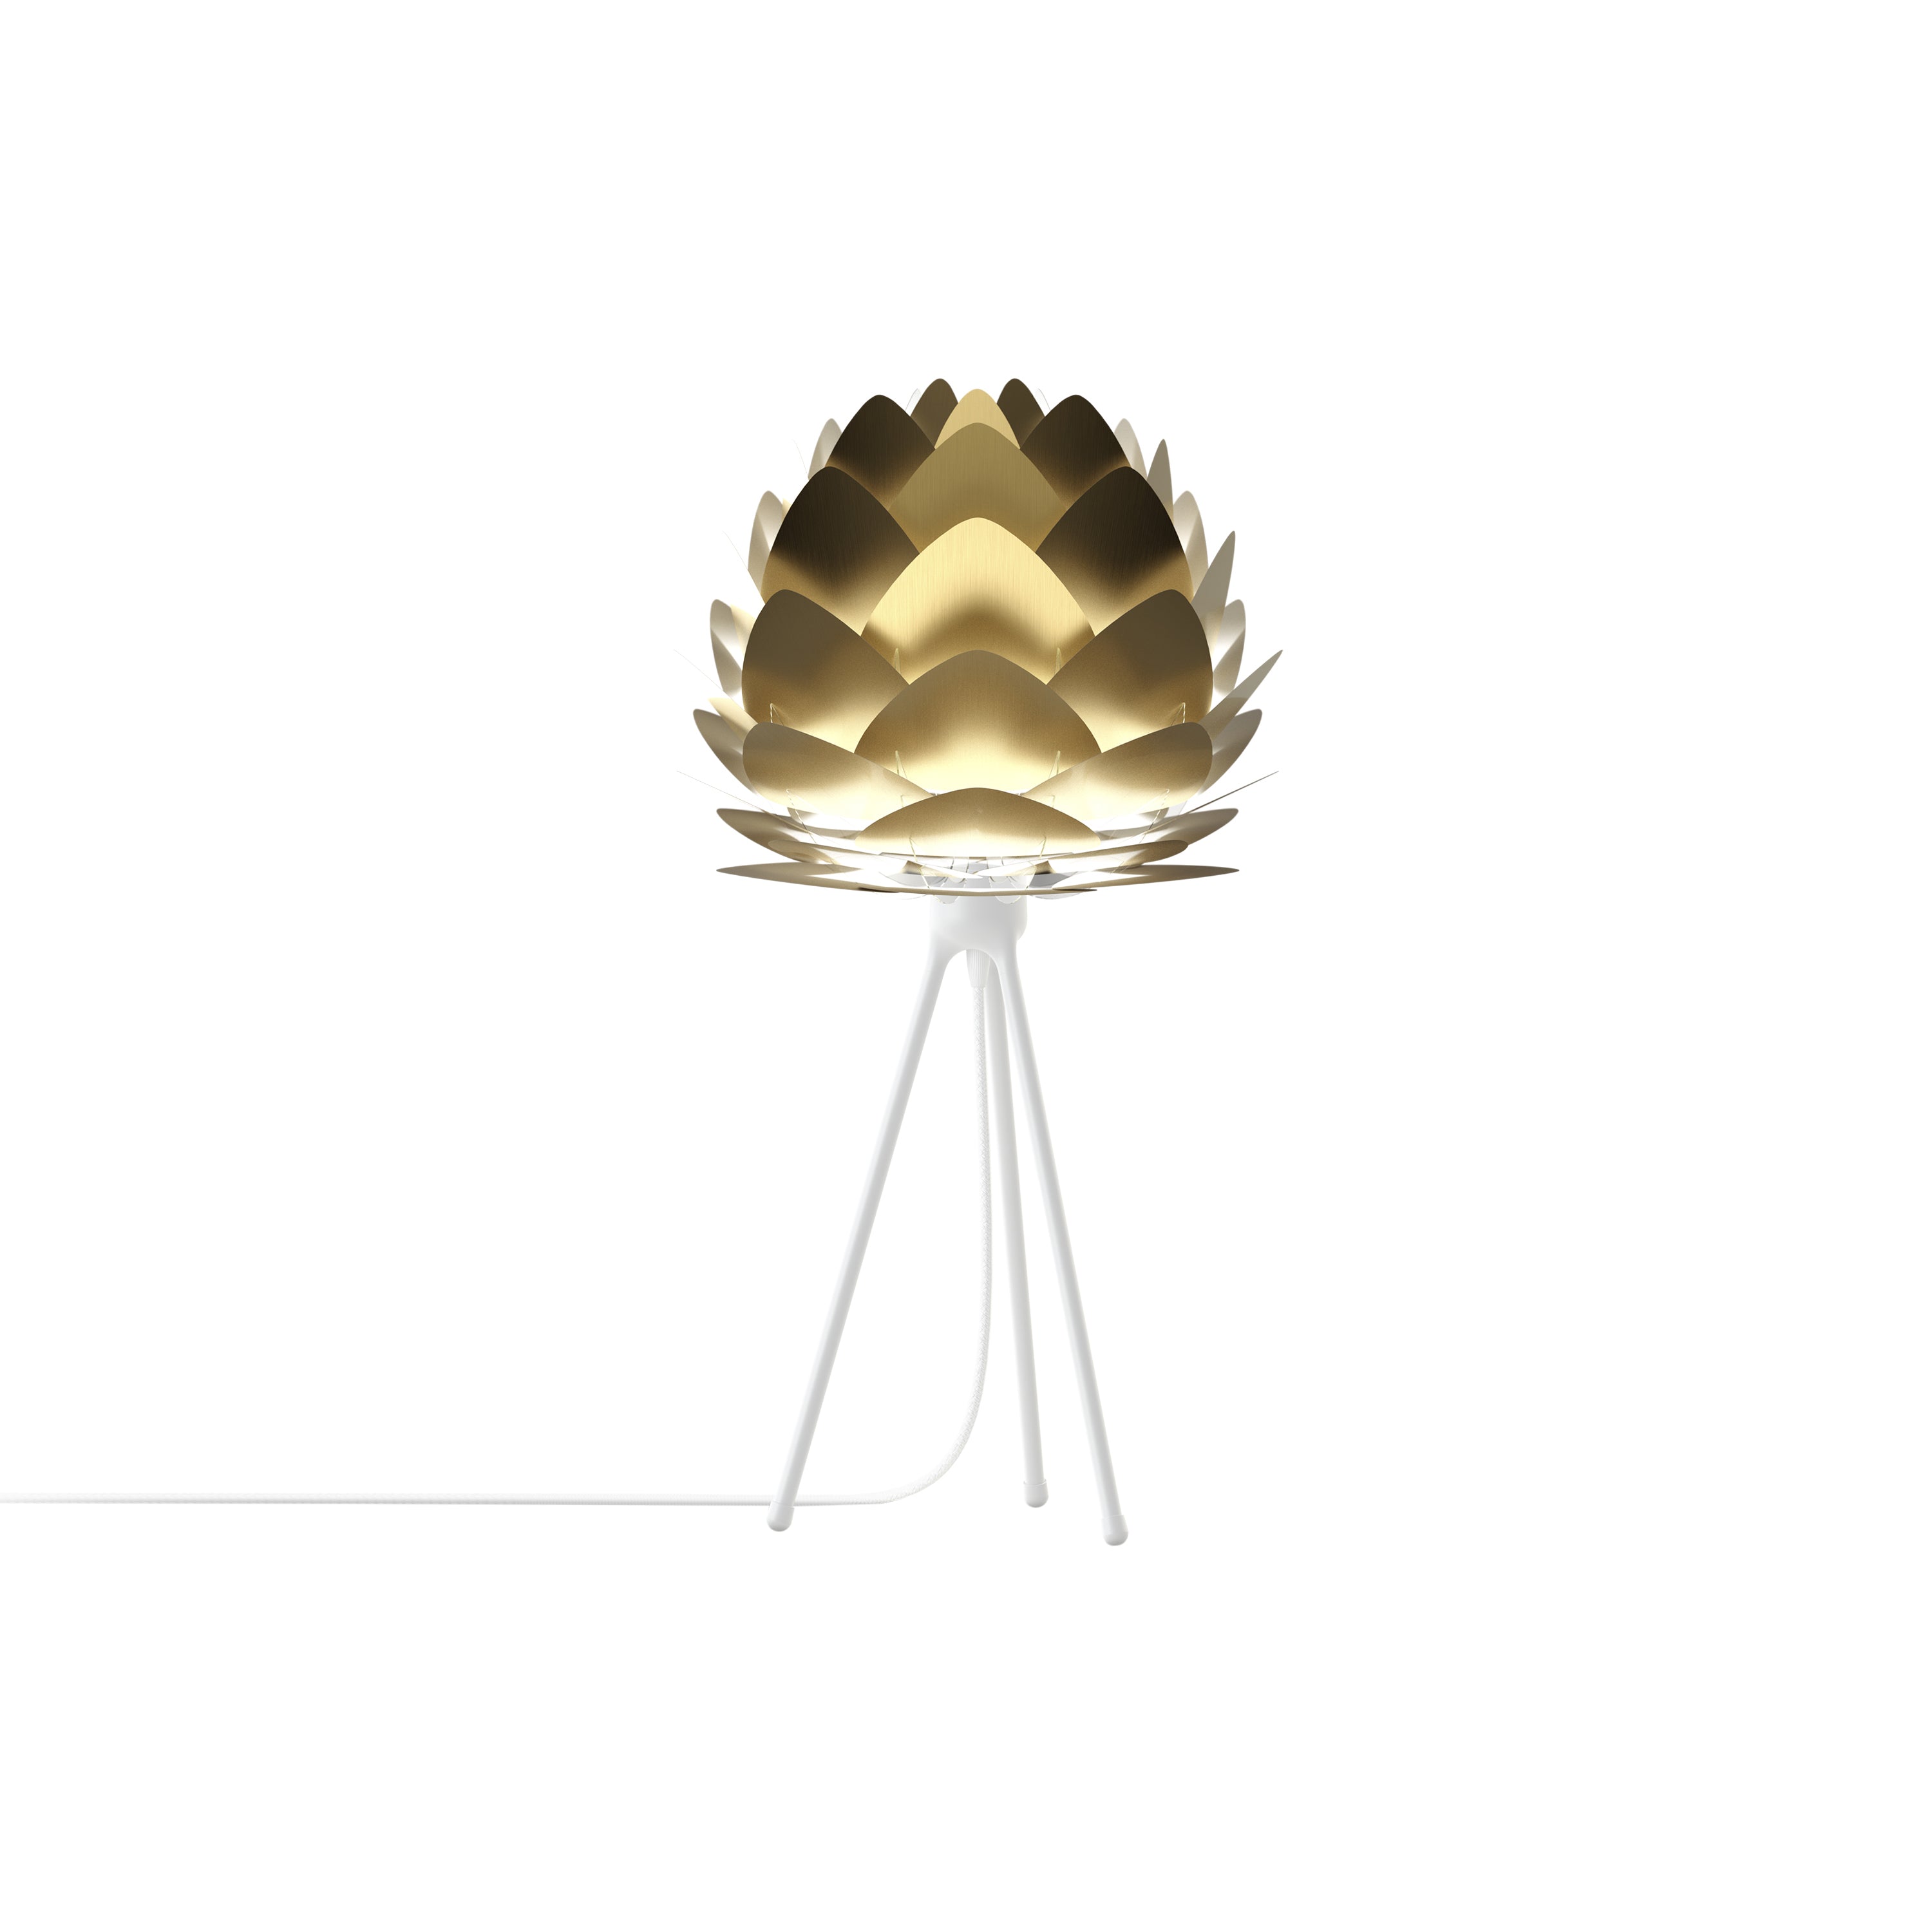 Aluvia Tripod Table Lamp: Mini - 15.8